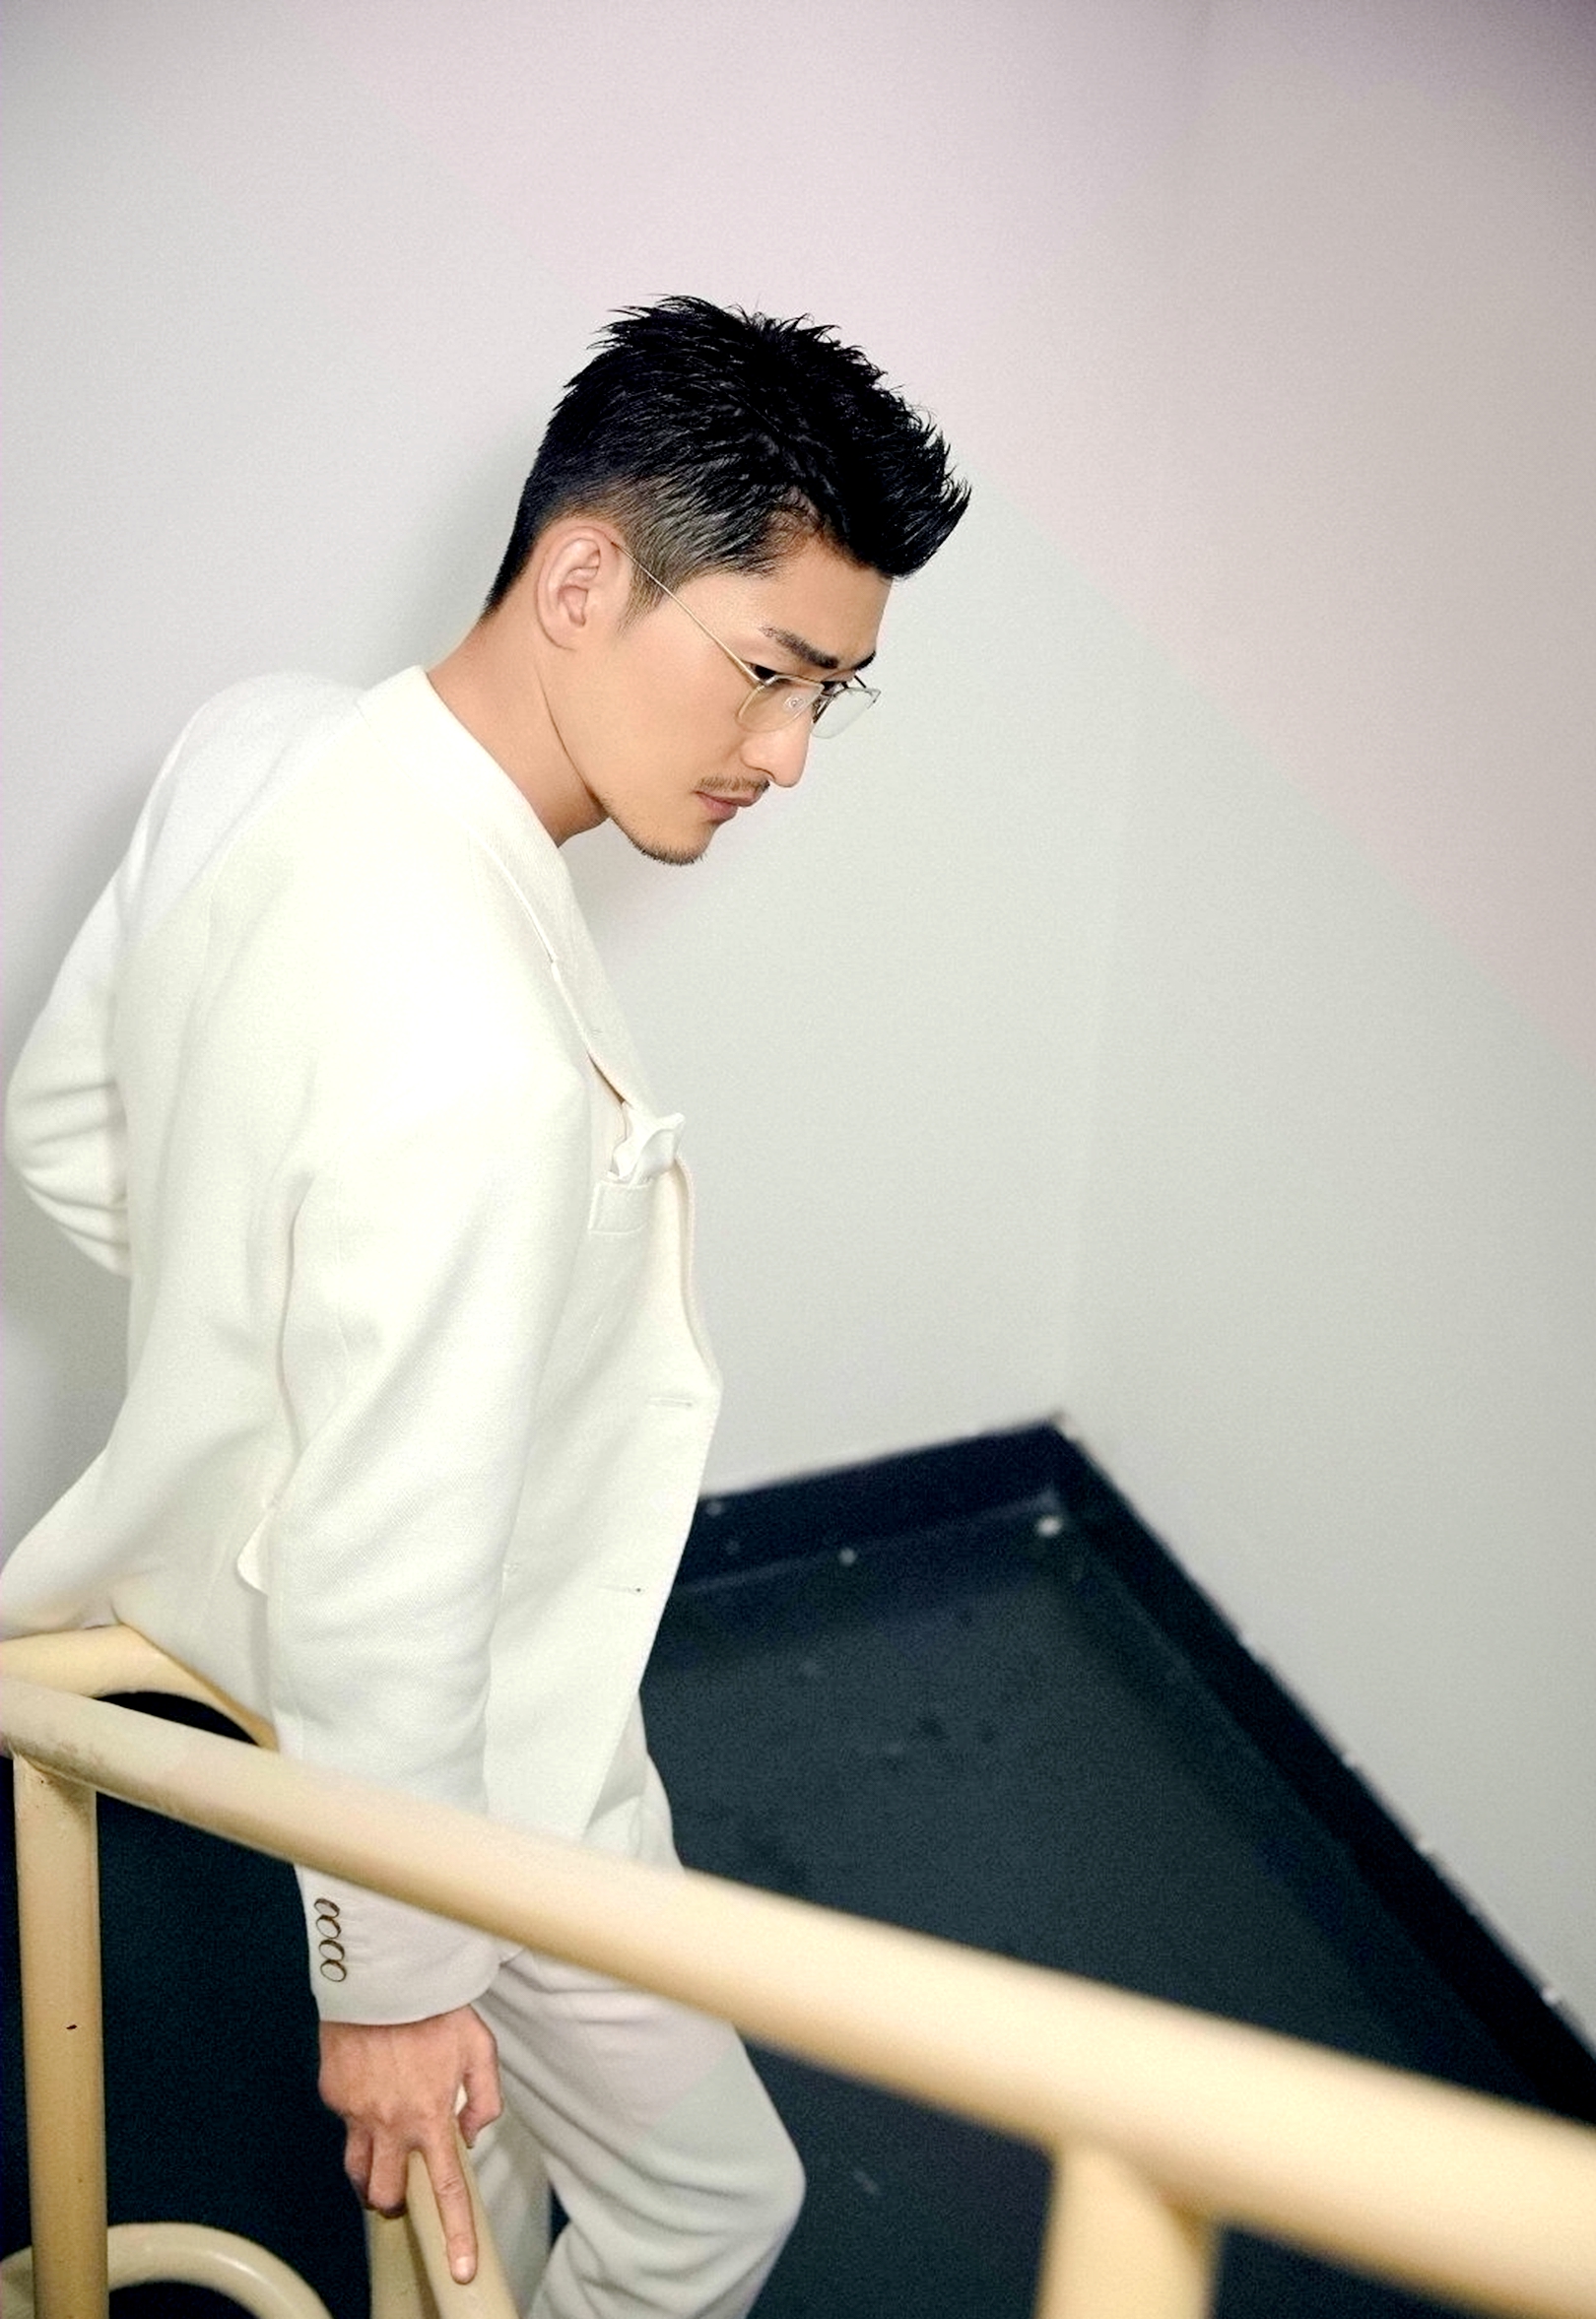 张翰一身白色西装出席2019上海电影节,胡子拉碴更显熟男魅力